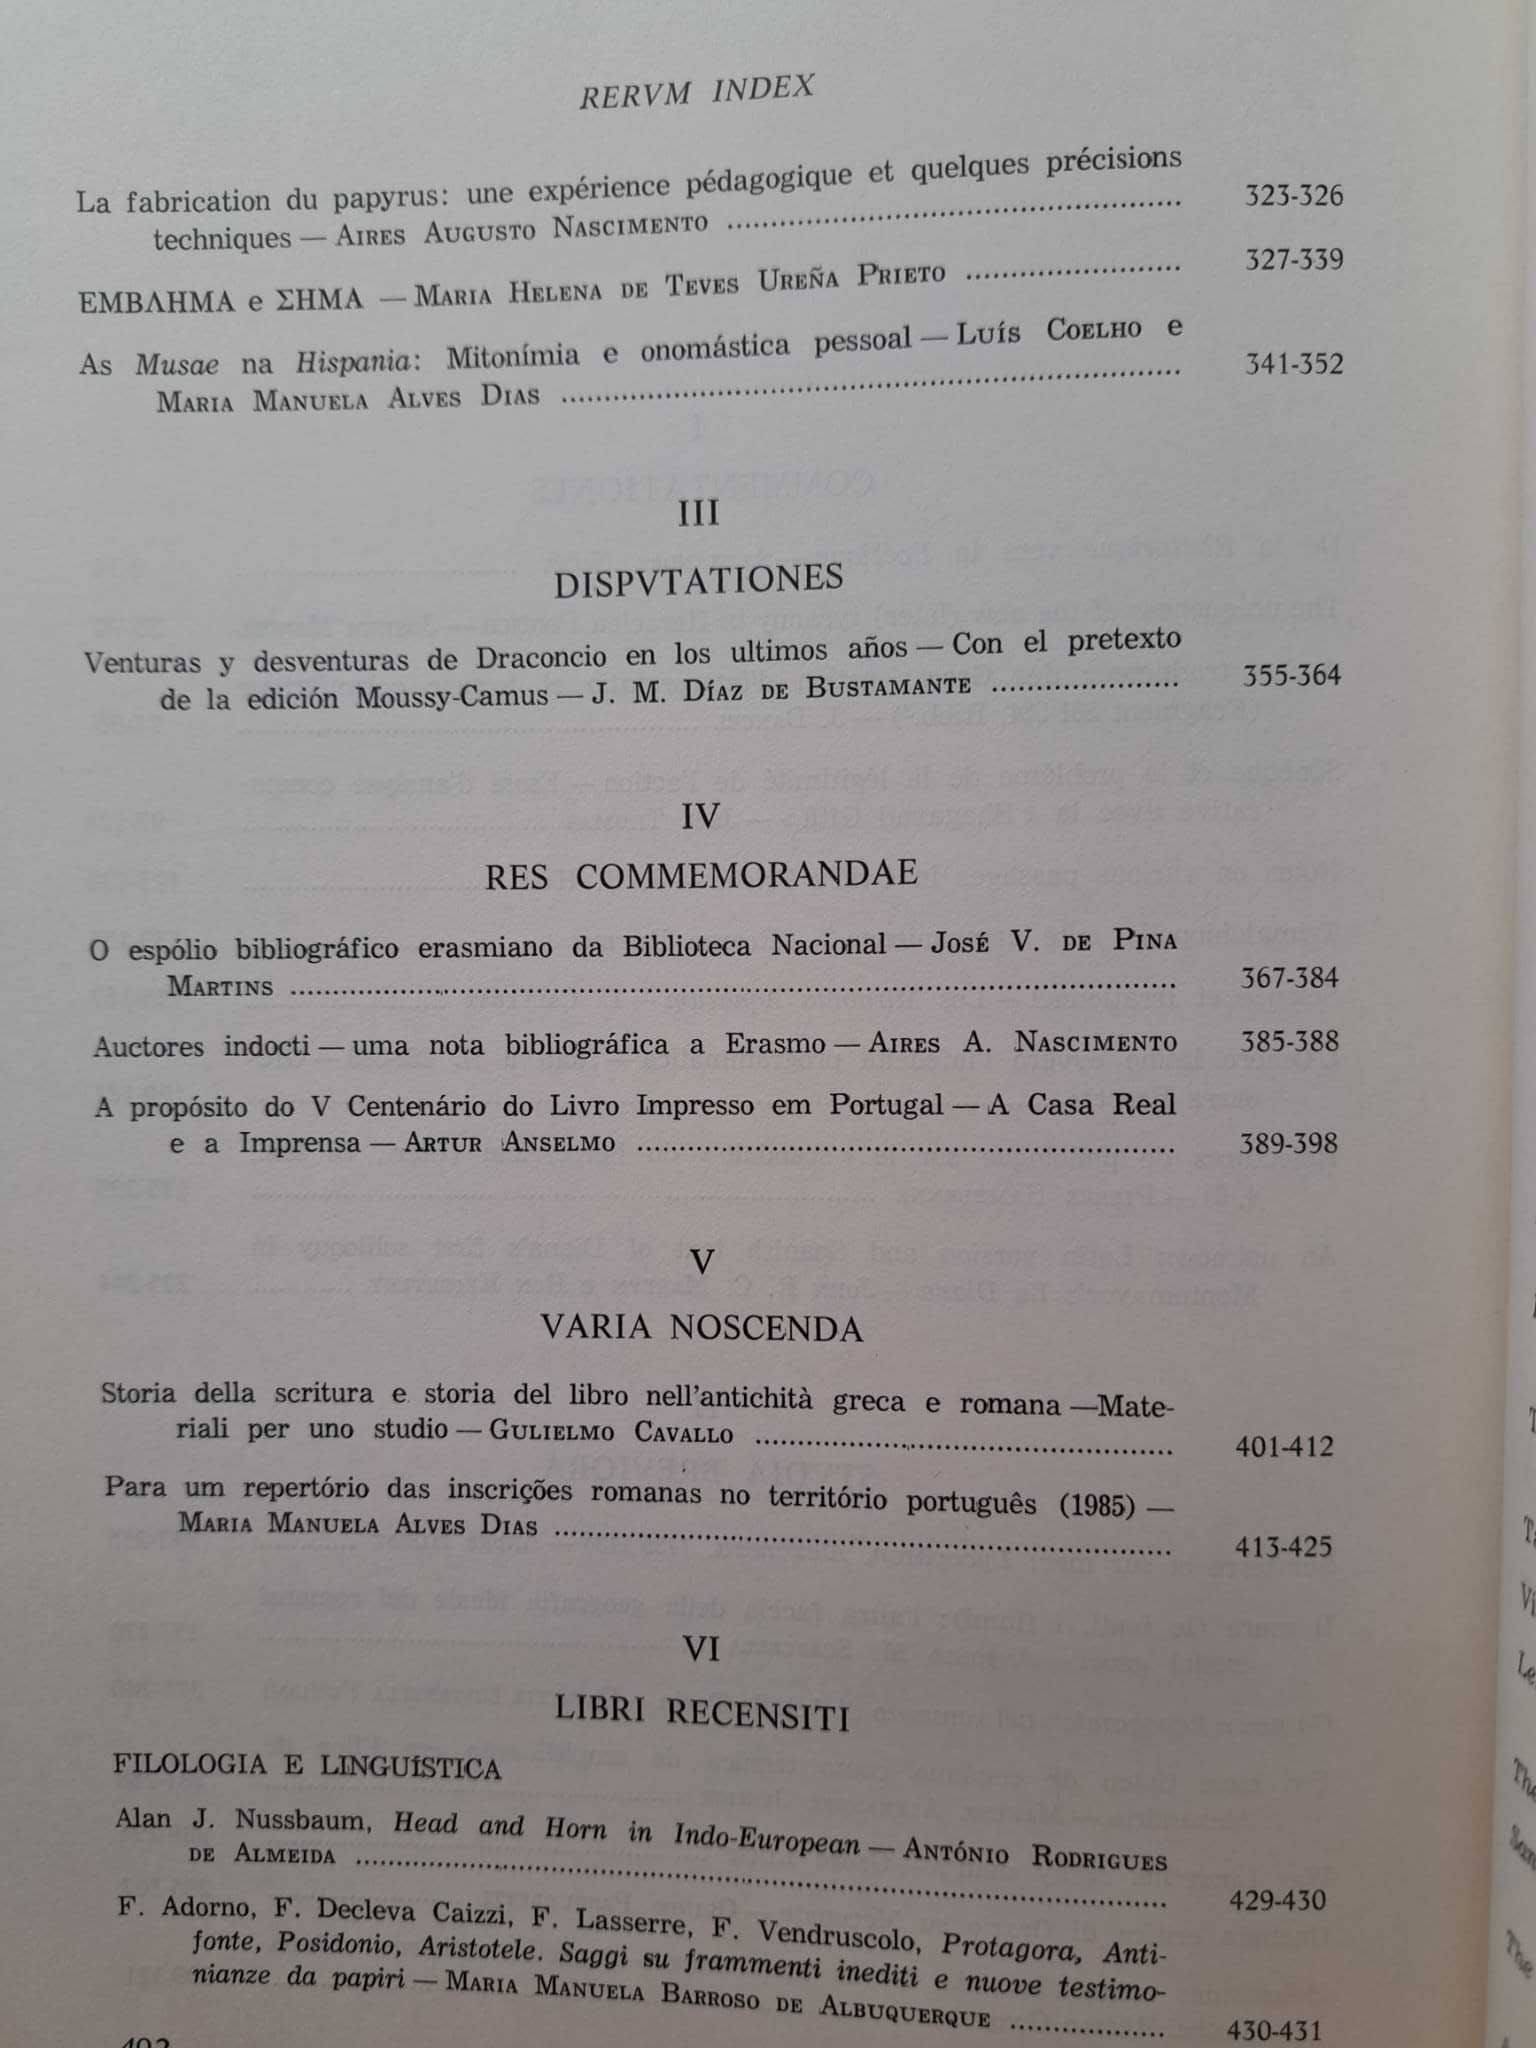 Euphrosyne Revista de Filologia Clássica Vol. XVI - PORTES GRÁTIS